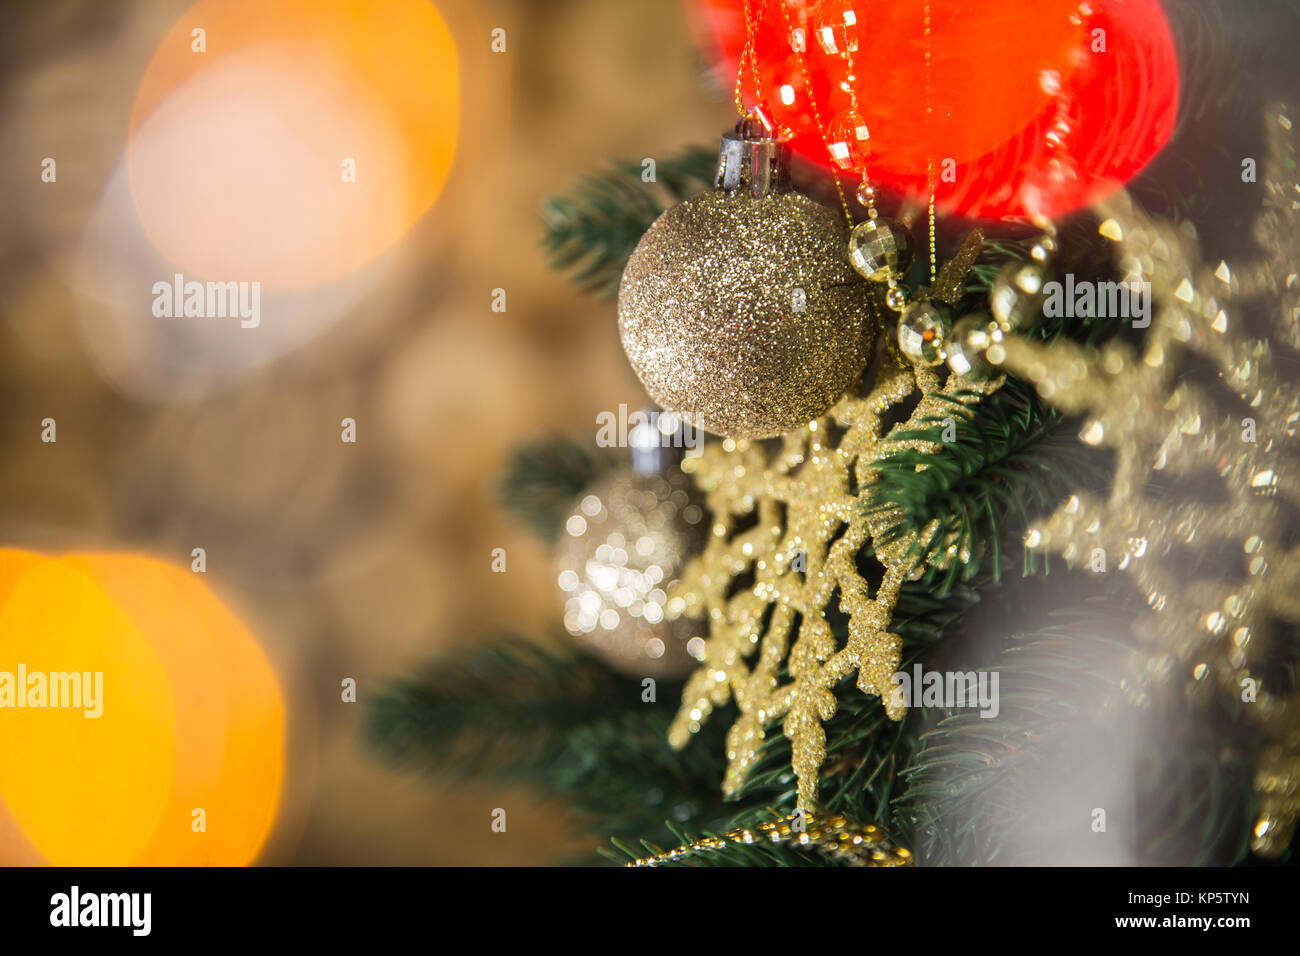 Detailansicht der Schönen glänzenden goldenen runde Schneeflocken und Kugeln am Weihnachtsbaum Niederlassungen in Home Interior hängen. Dekorierte Tanne an blurry li Stockfoto